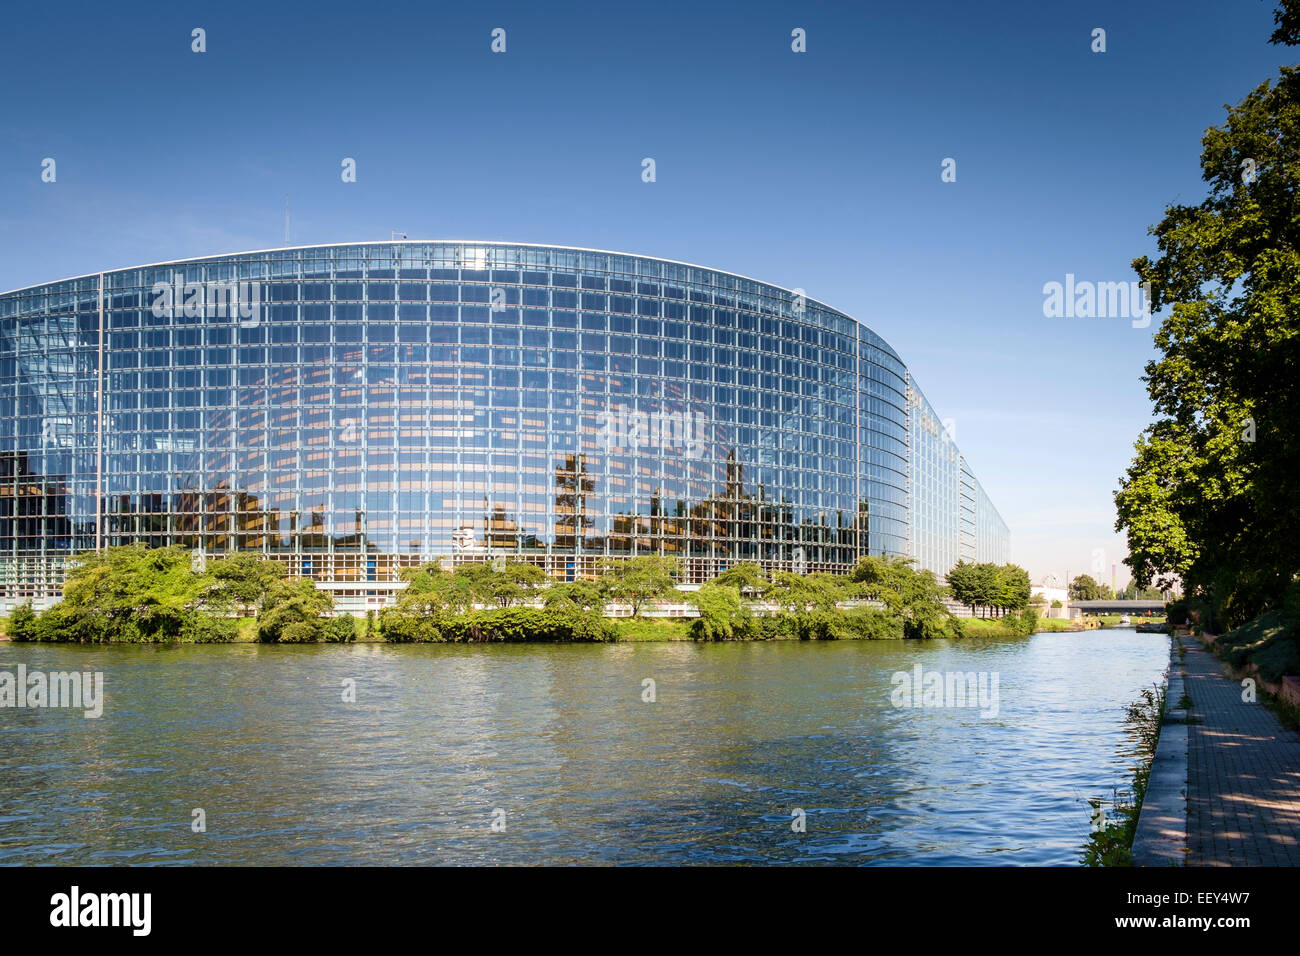 Moderne Architektur, Frankreich - Gebäude des Europäischen Parlaments, Straßburg, Frankreich, Europa Stockfoto